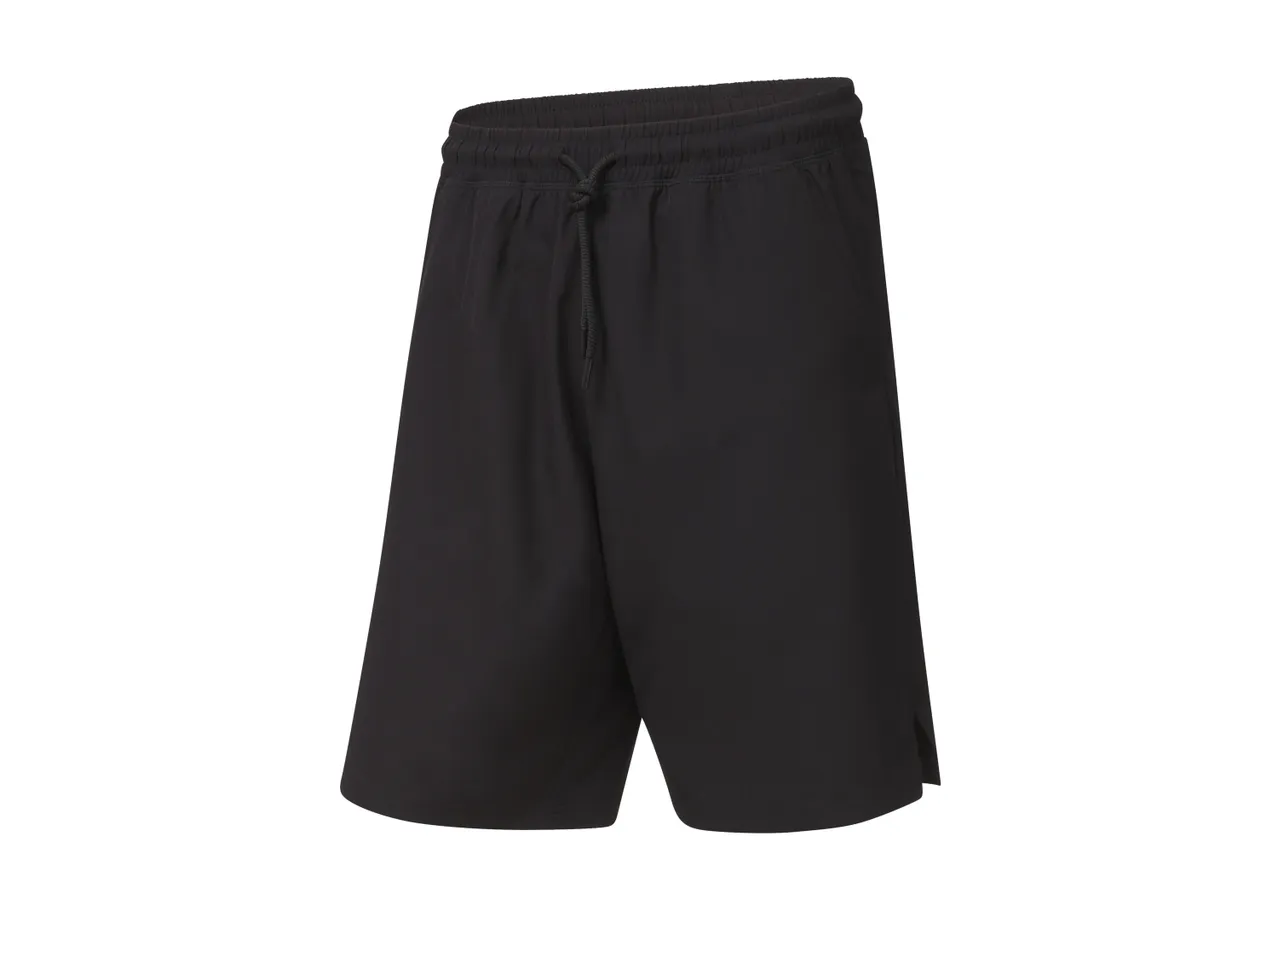 Shorts sportivi da uomo , prezzo 6.99 EUR 
Shorts sportivi da uomo Misure: M-XL ...